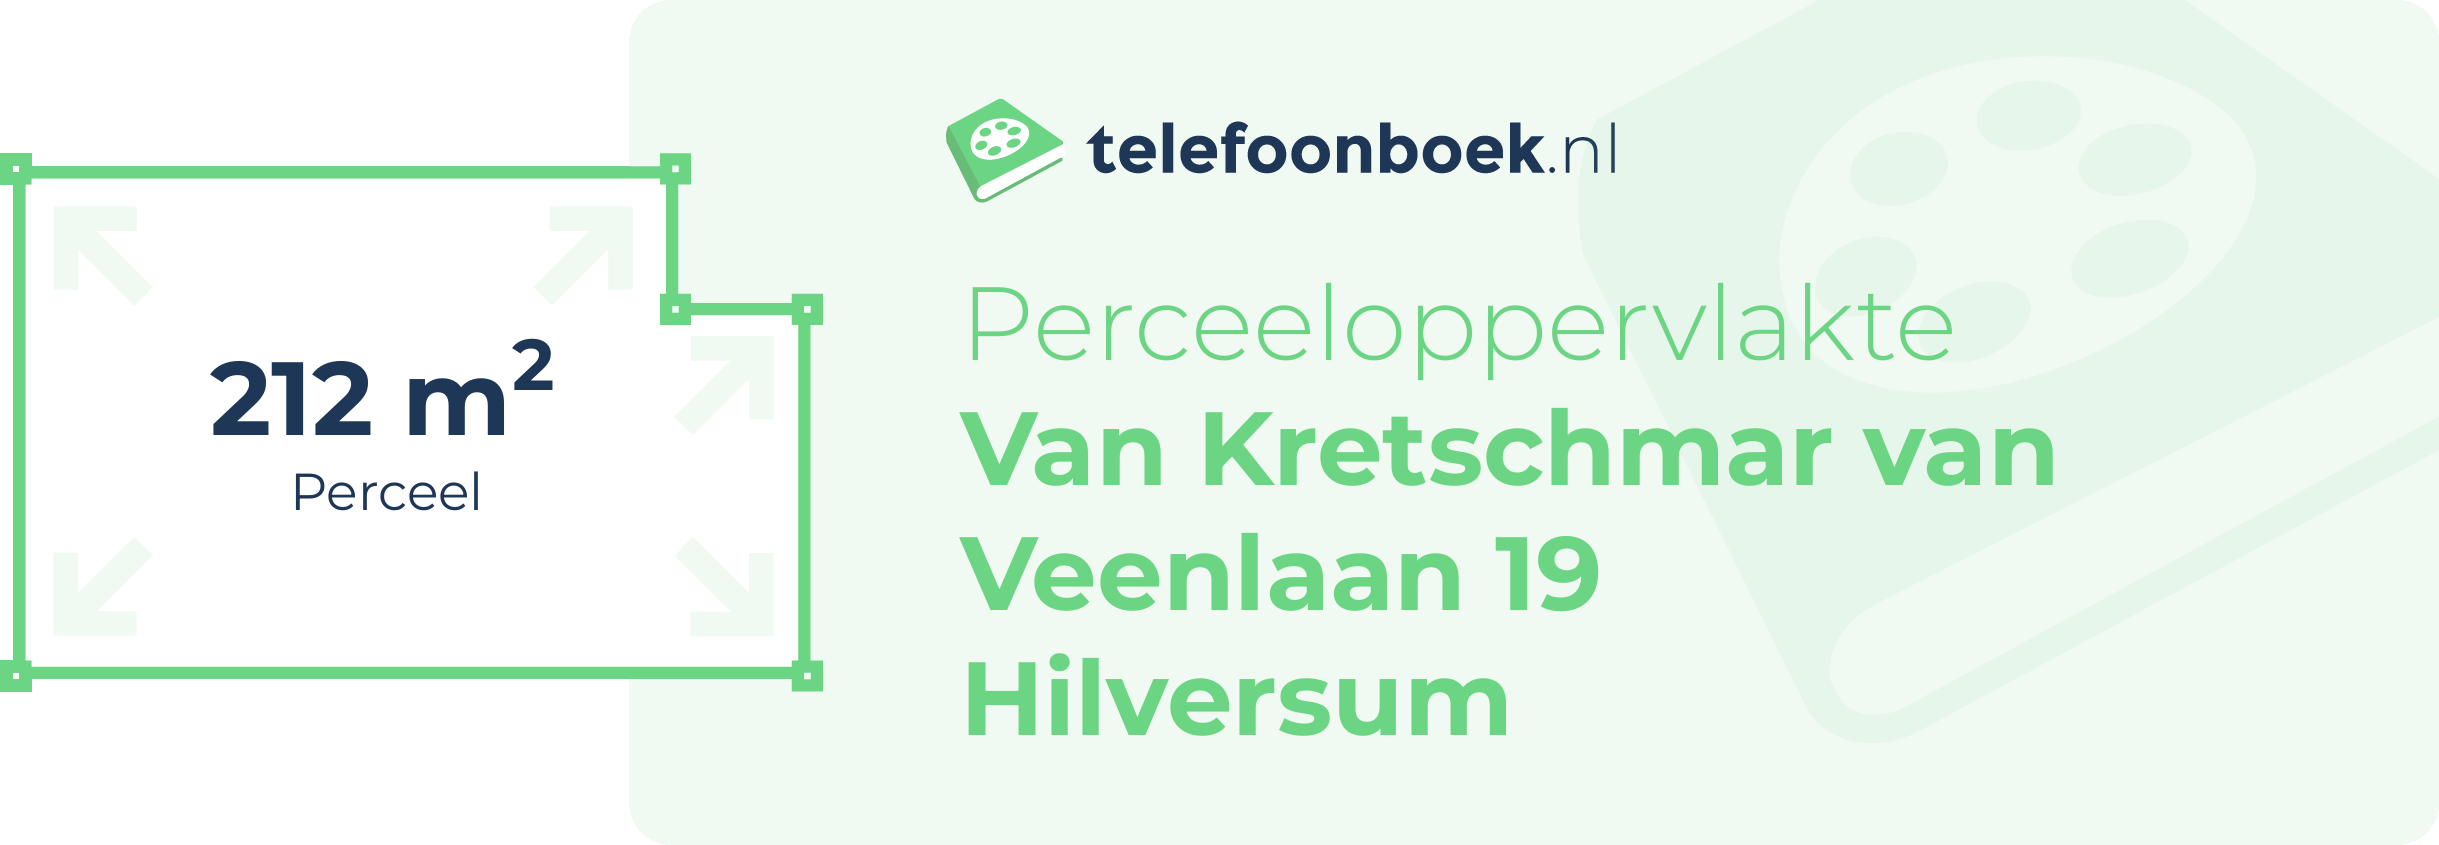 Perceeloppervlakte Van Kretschmar Van Veenlaan 19 Hilversum